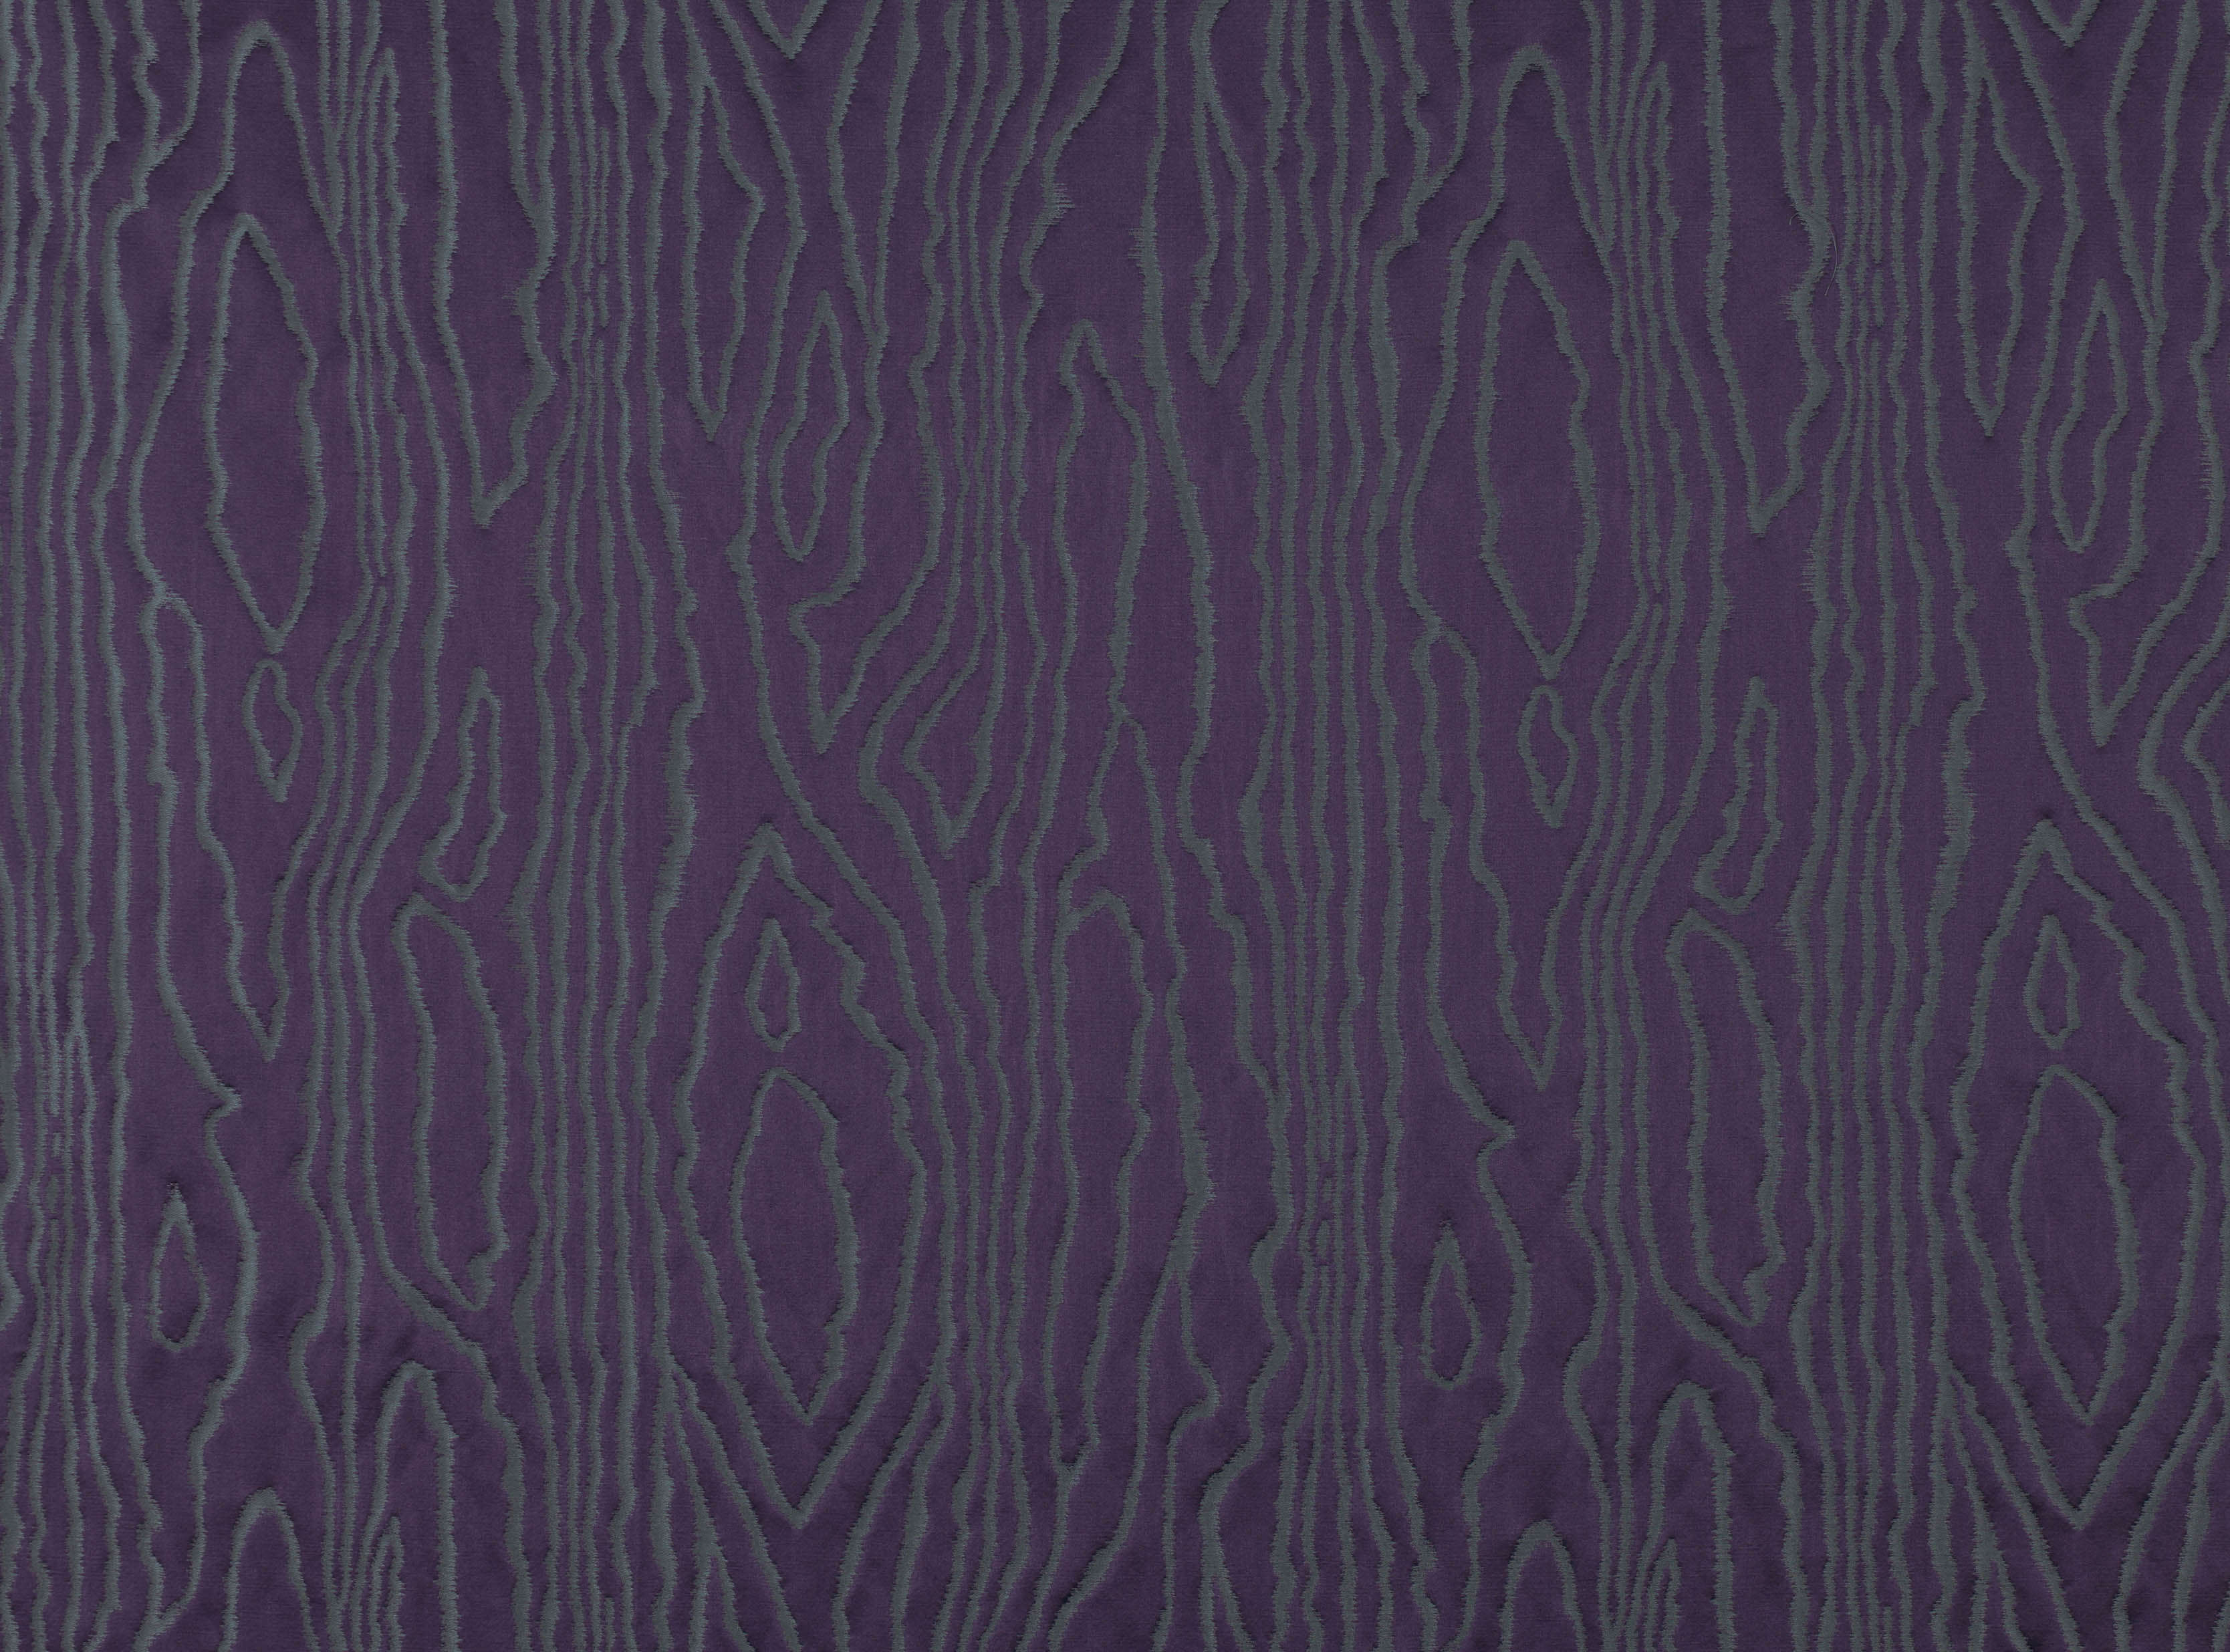 BLACK EDITION Astratto Imperial purple 7665/05